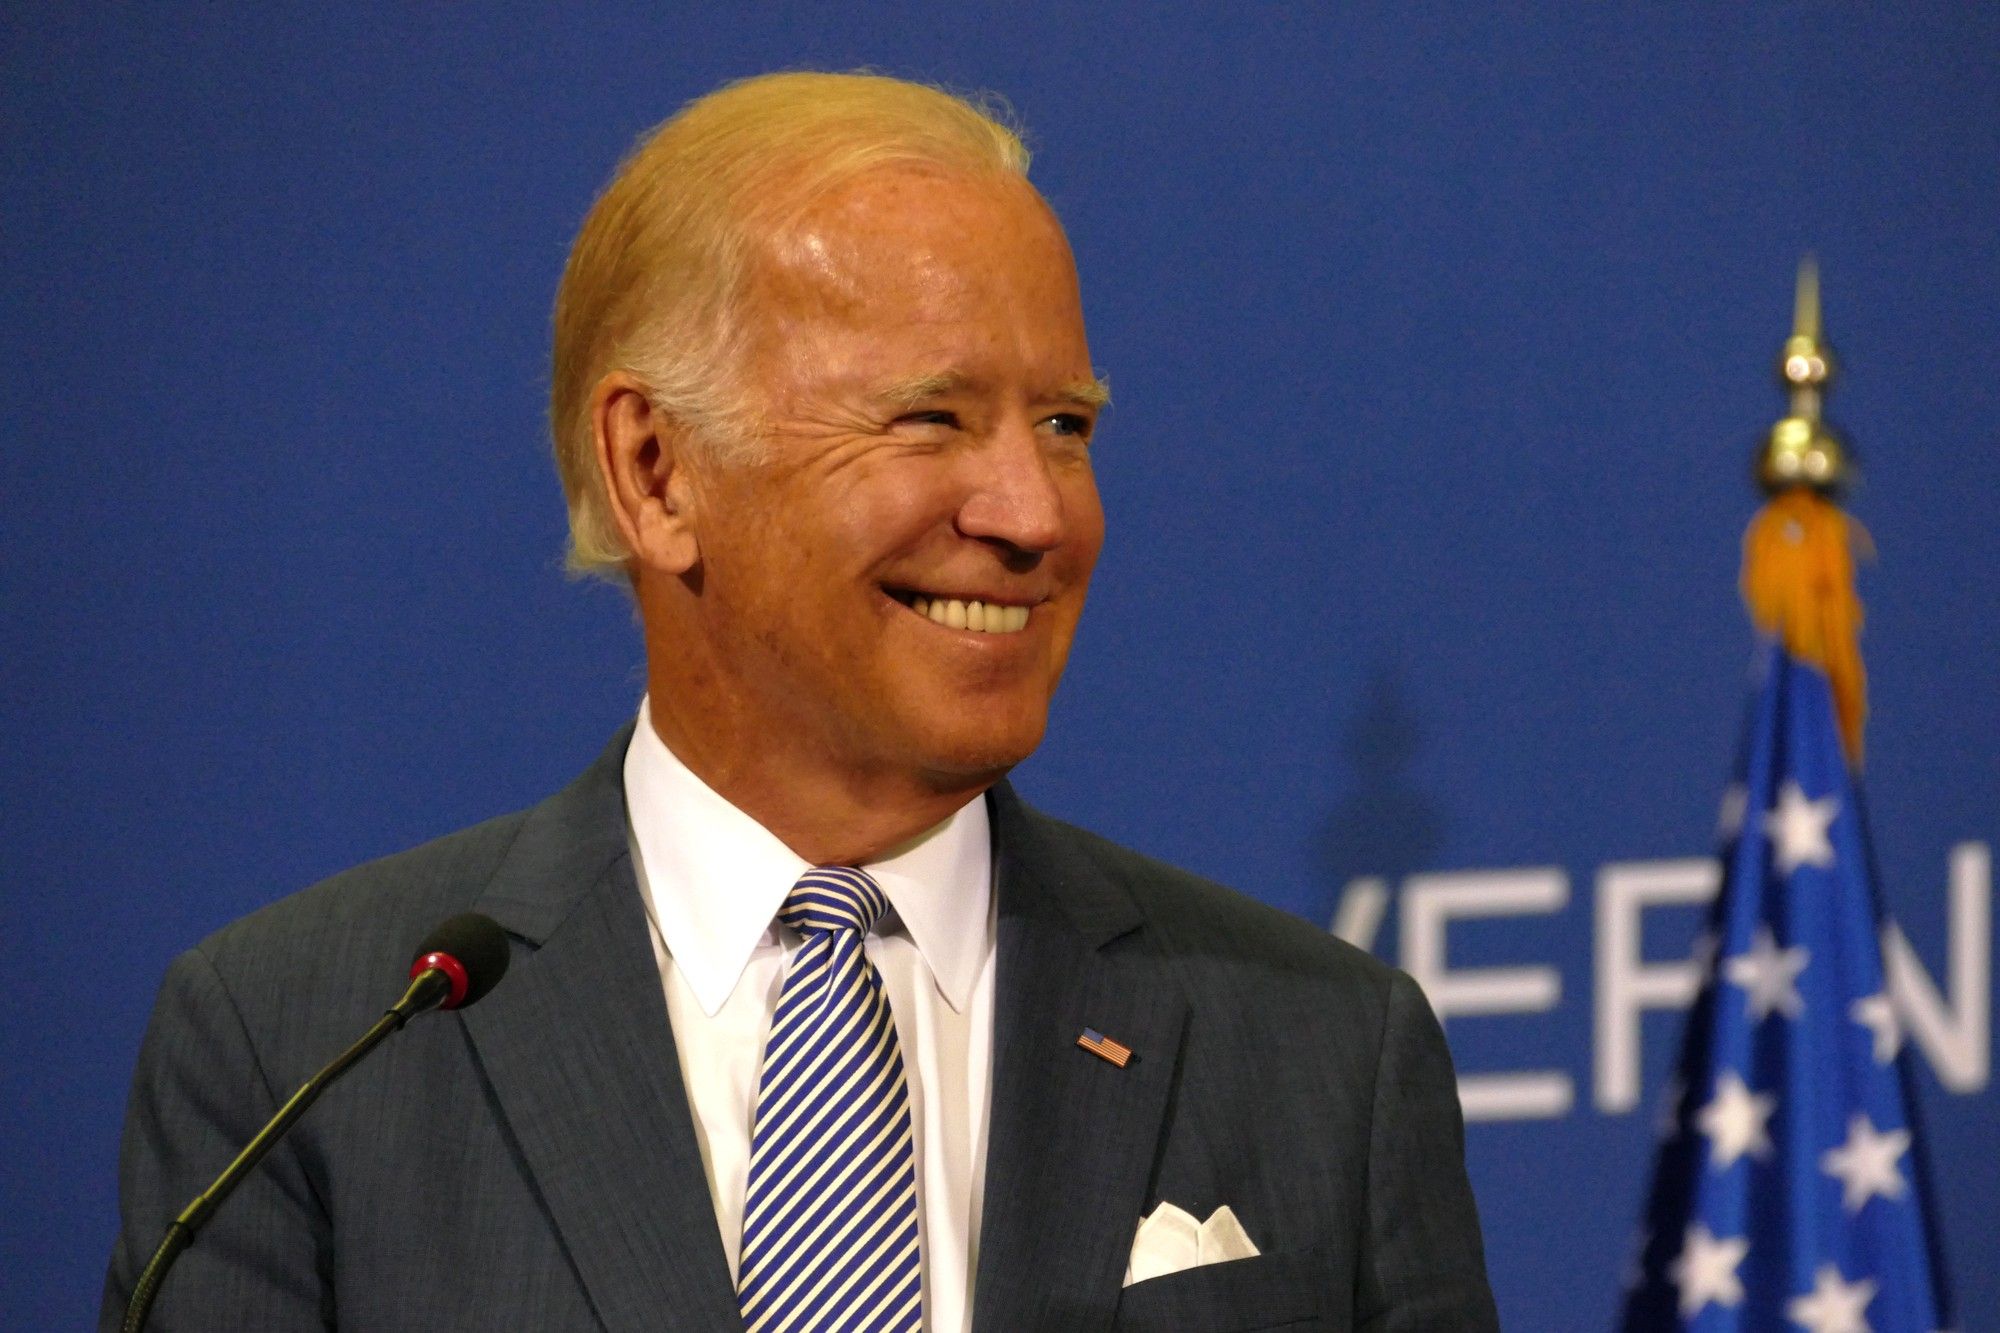 Pennsylvania's presidential election results favor Joe Biden.